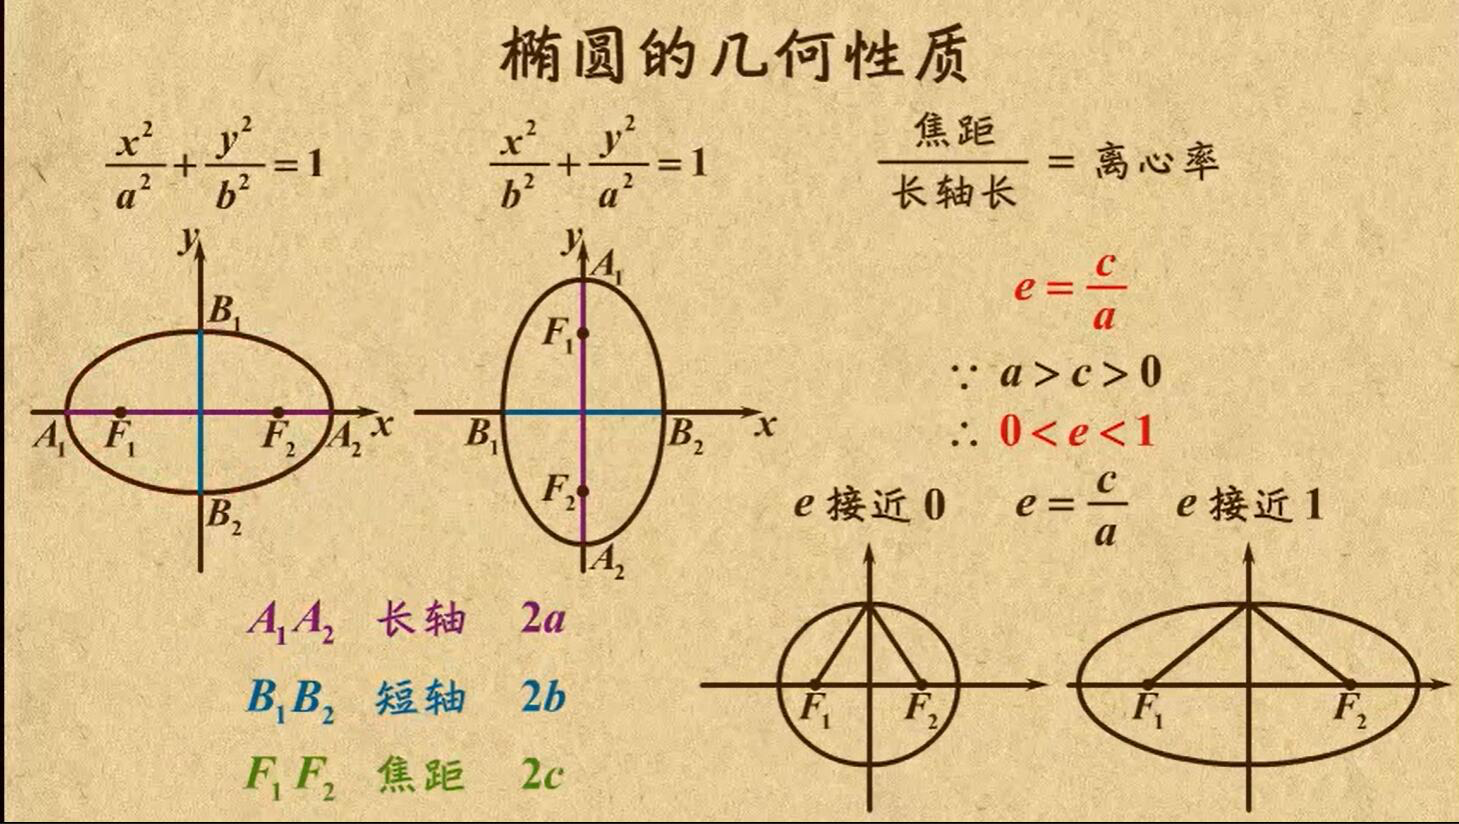 椭圆- 高中数学知识技巧 · 语雀